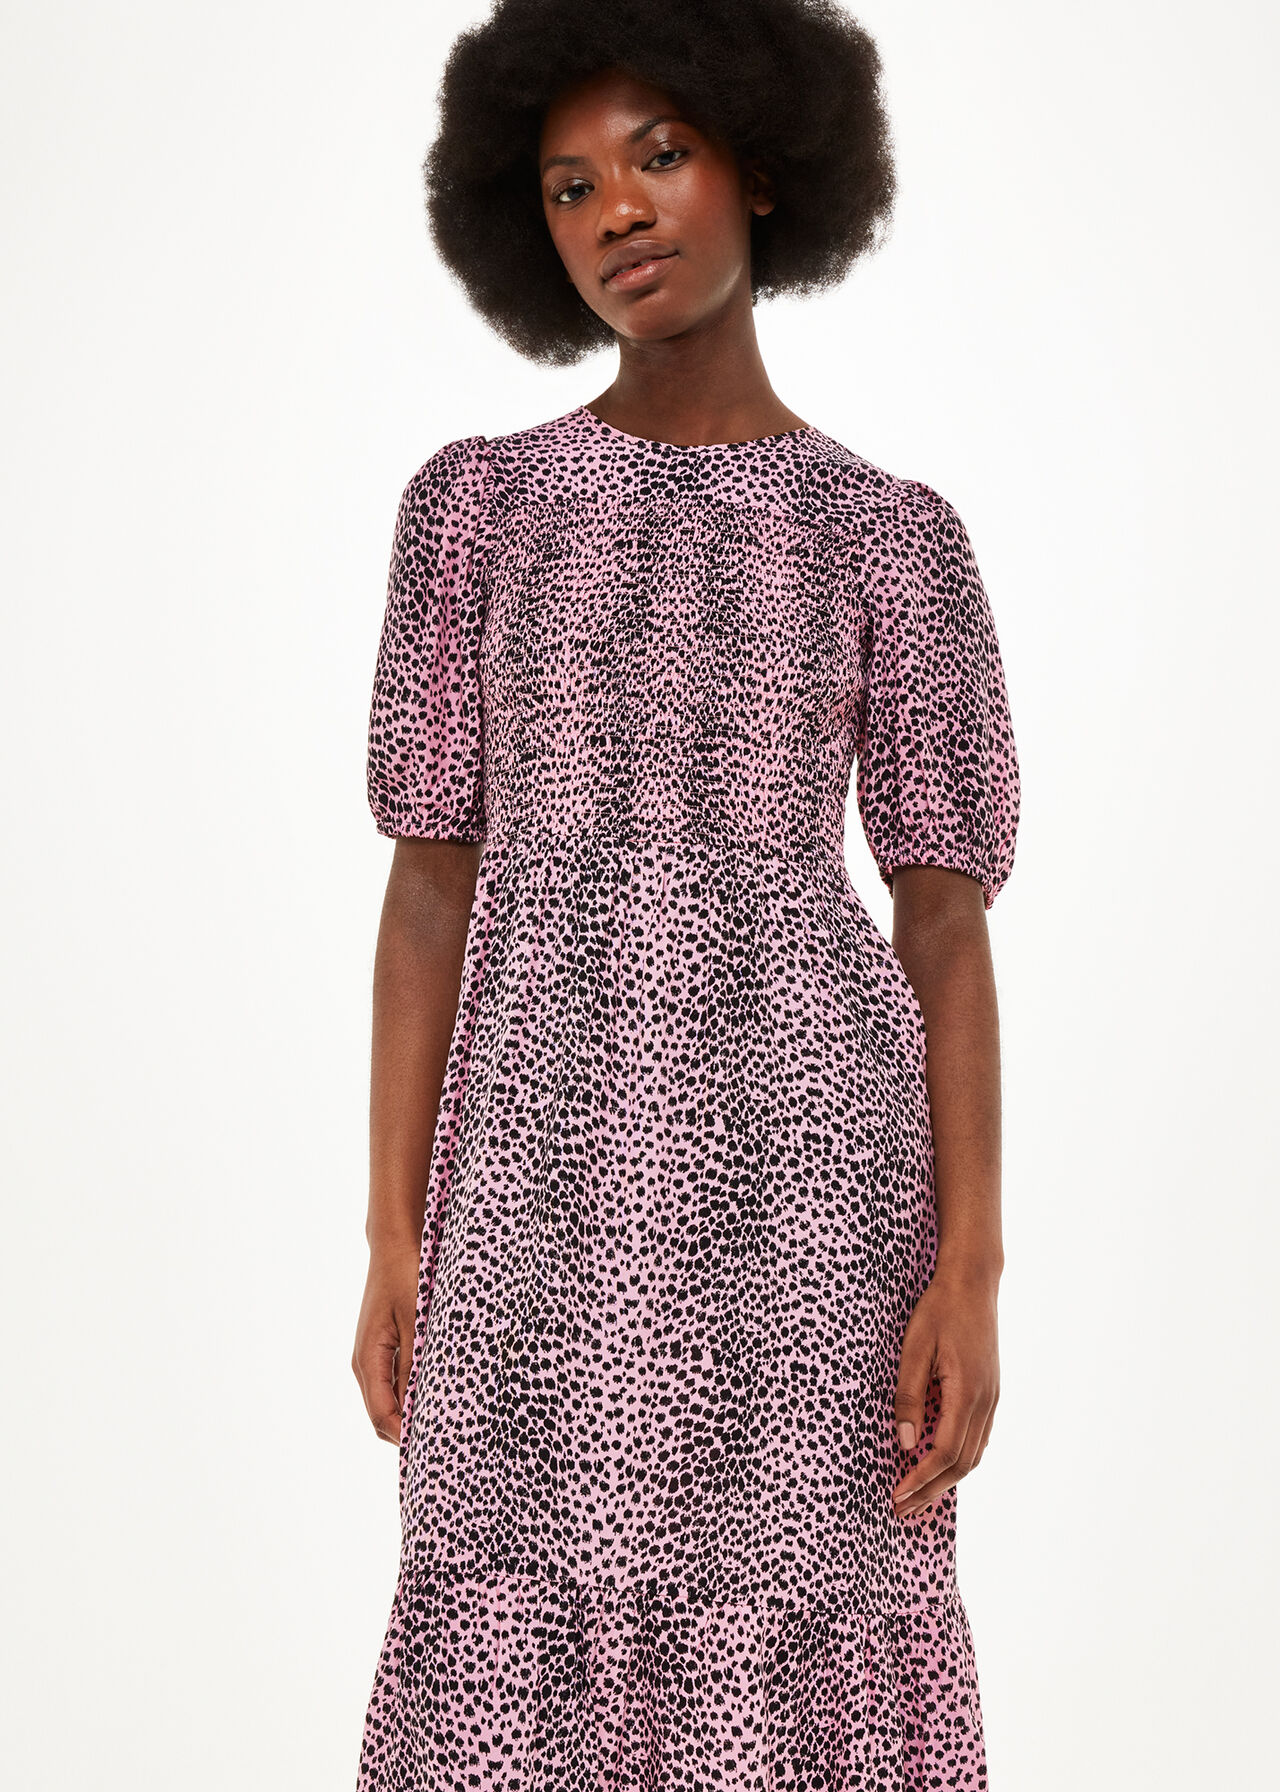 Sketched Cheetah Dress